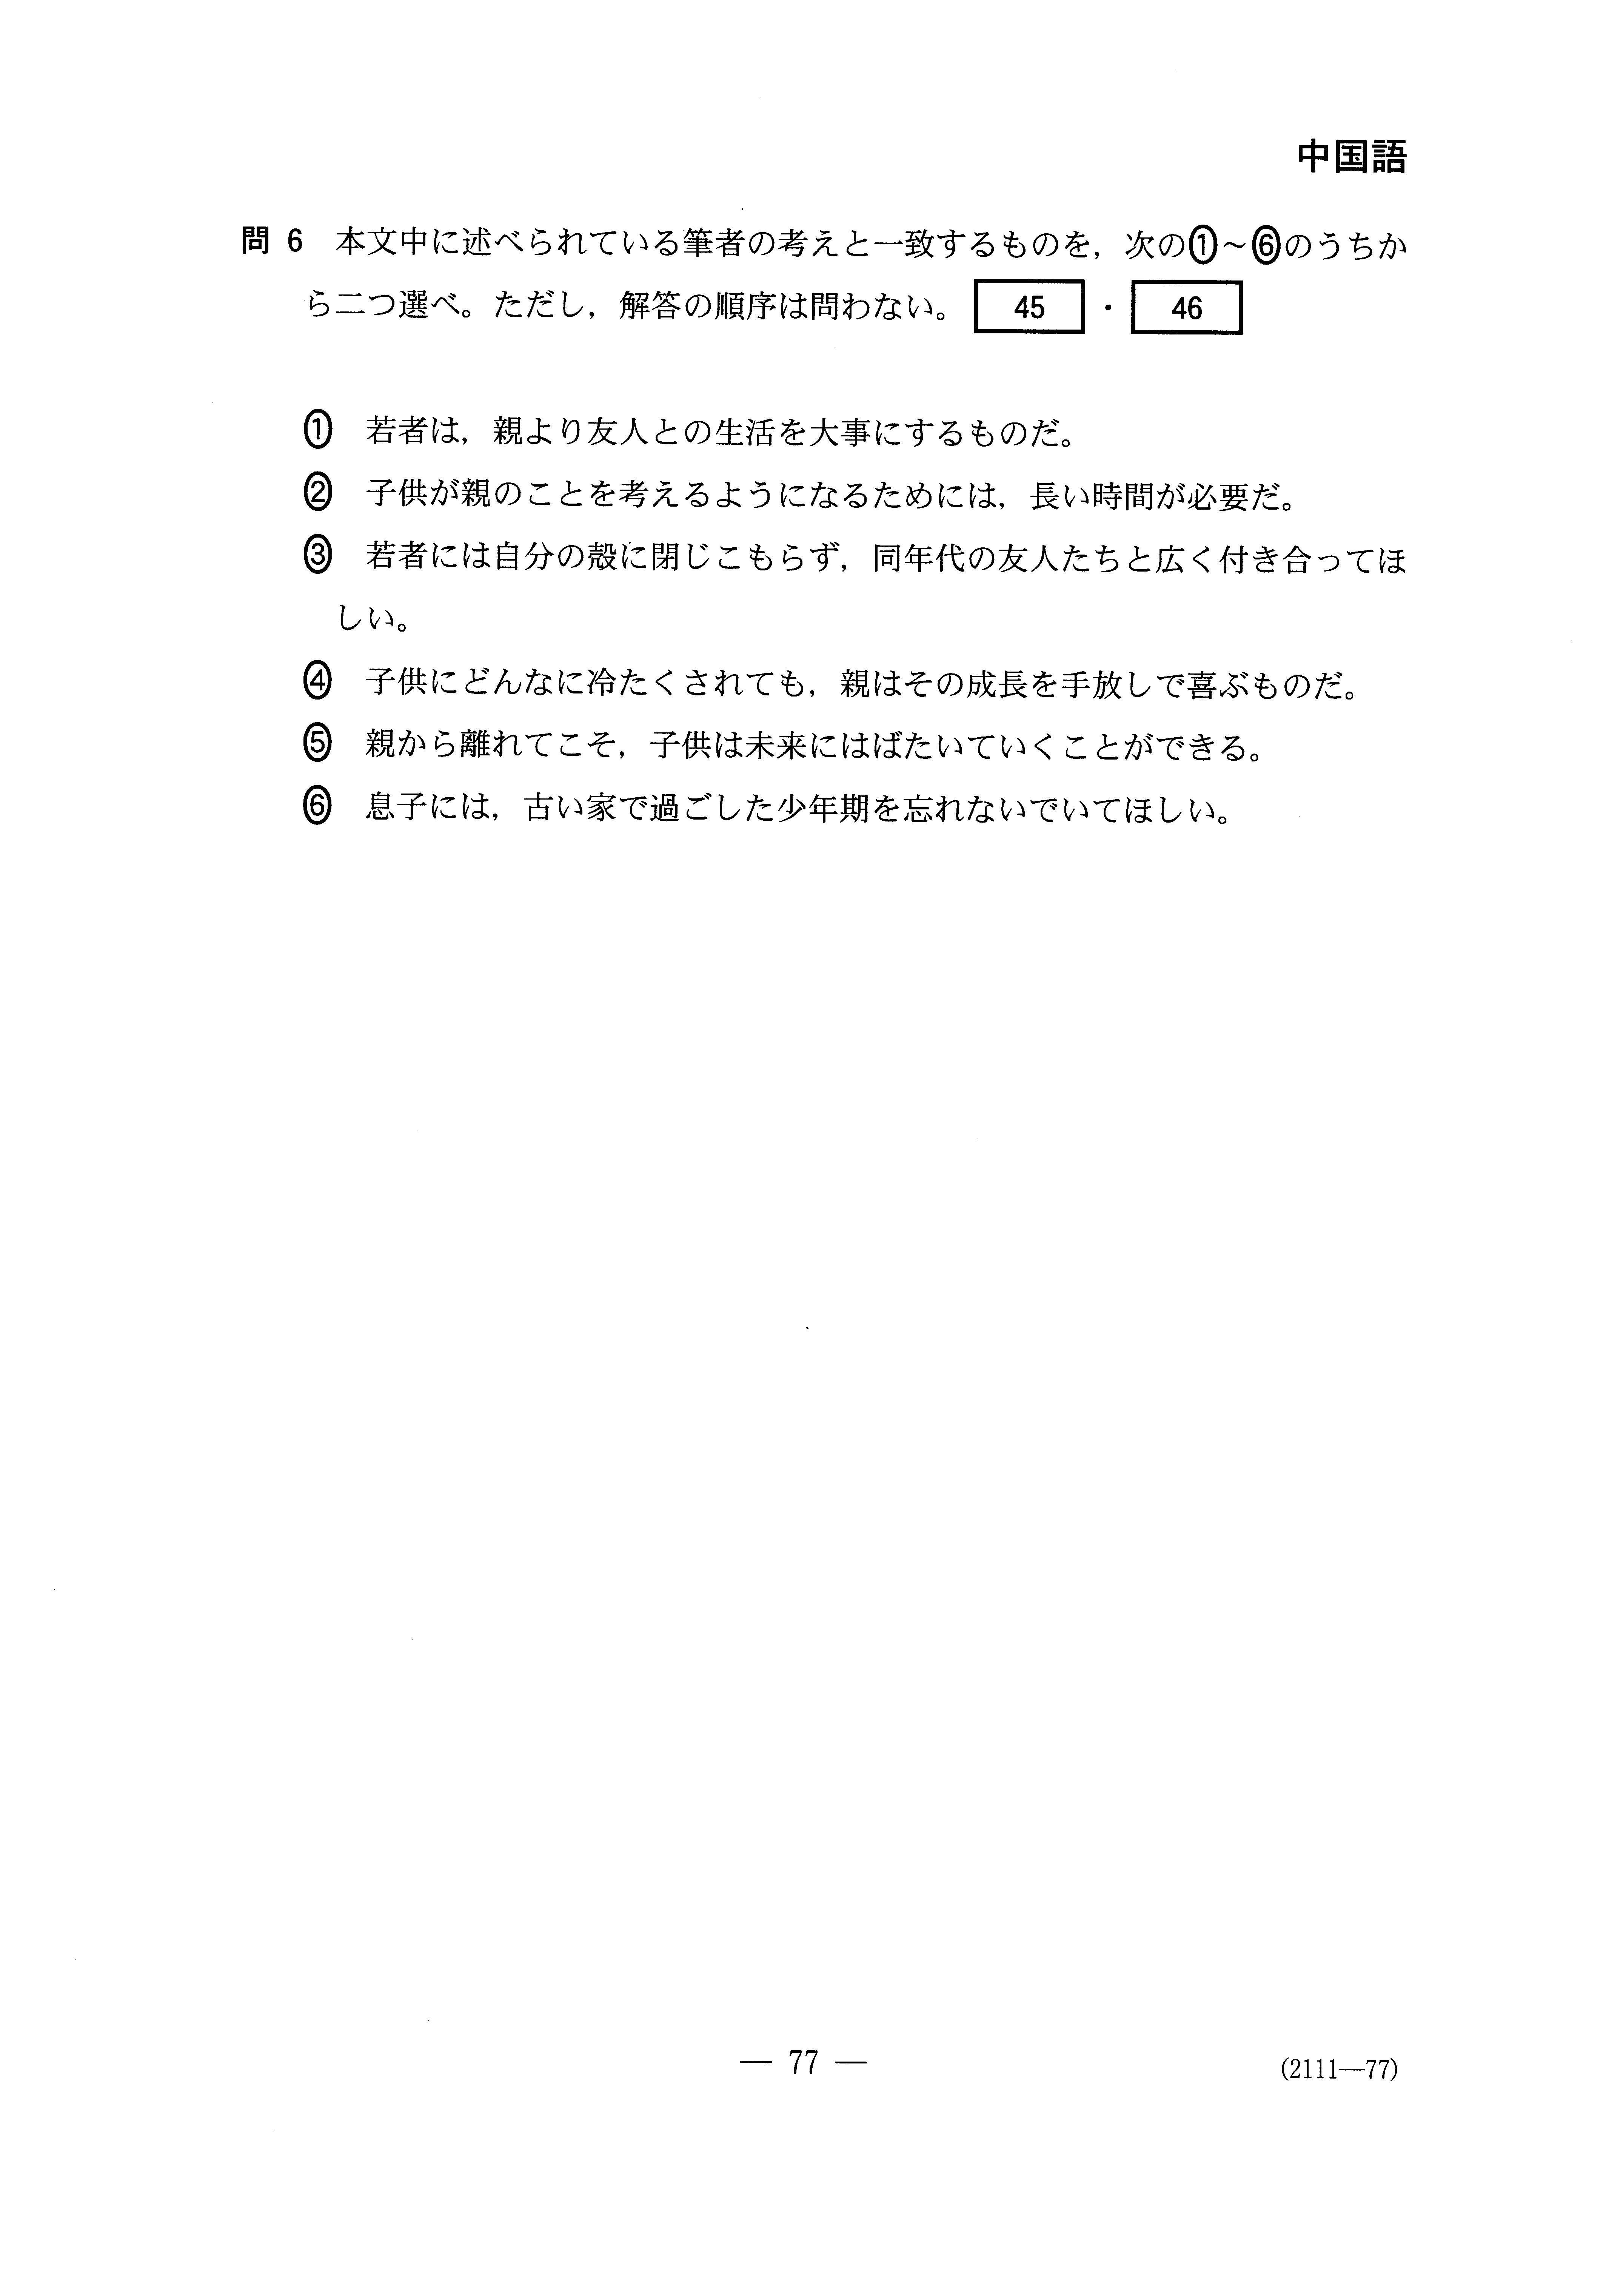 H28外国語 中国語 大学入試センター試験過去問